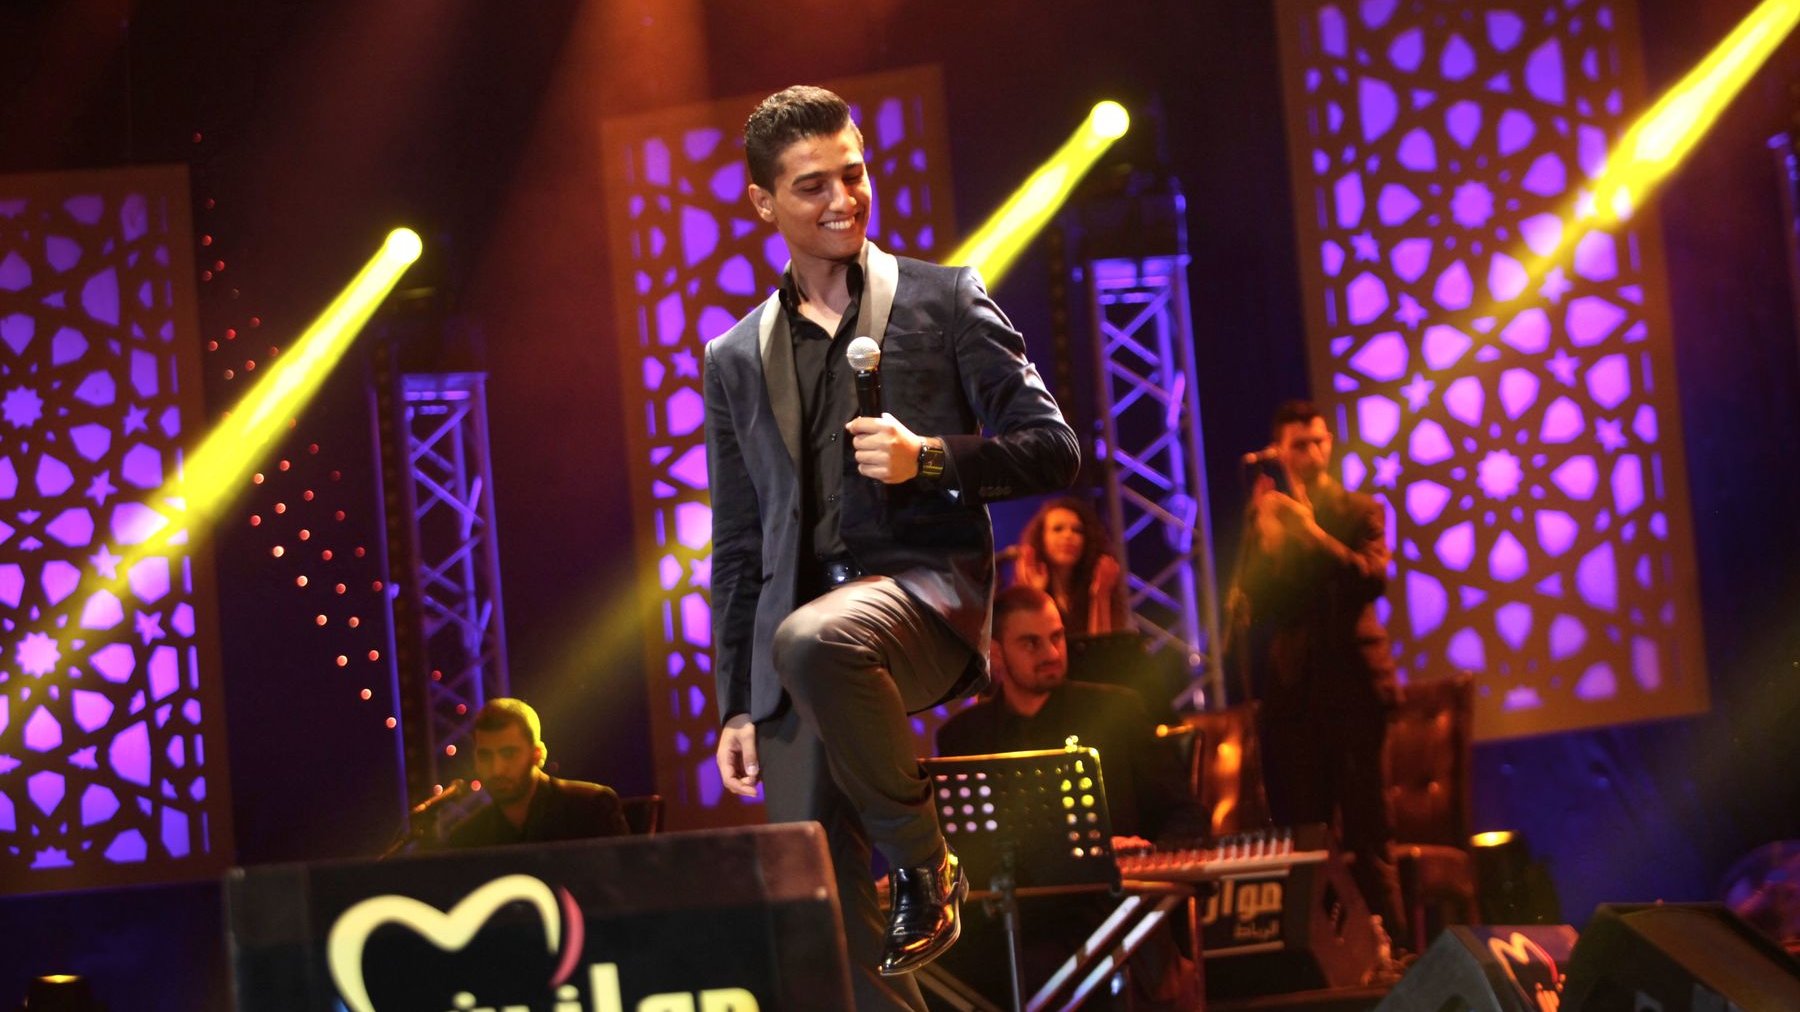 Le chanteur palestinien, tout en douceur, tout en sourire, a donné la pleine mesure de son talent lors de ce concert. Une étreinte, magique, entre l'artiste et son public. 
